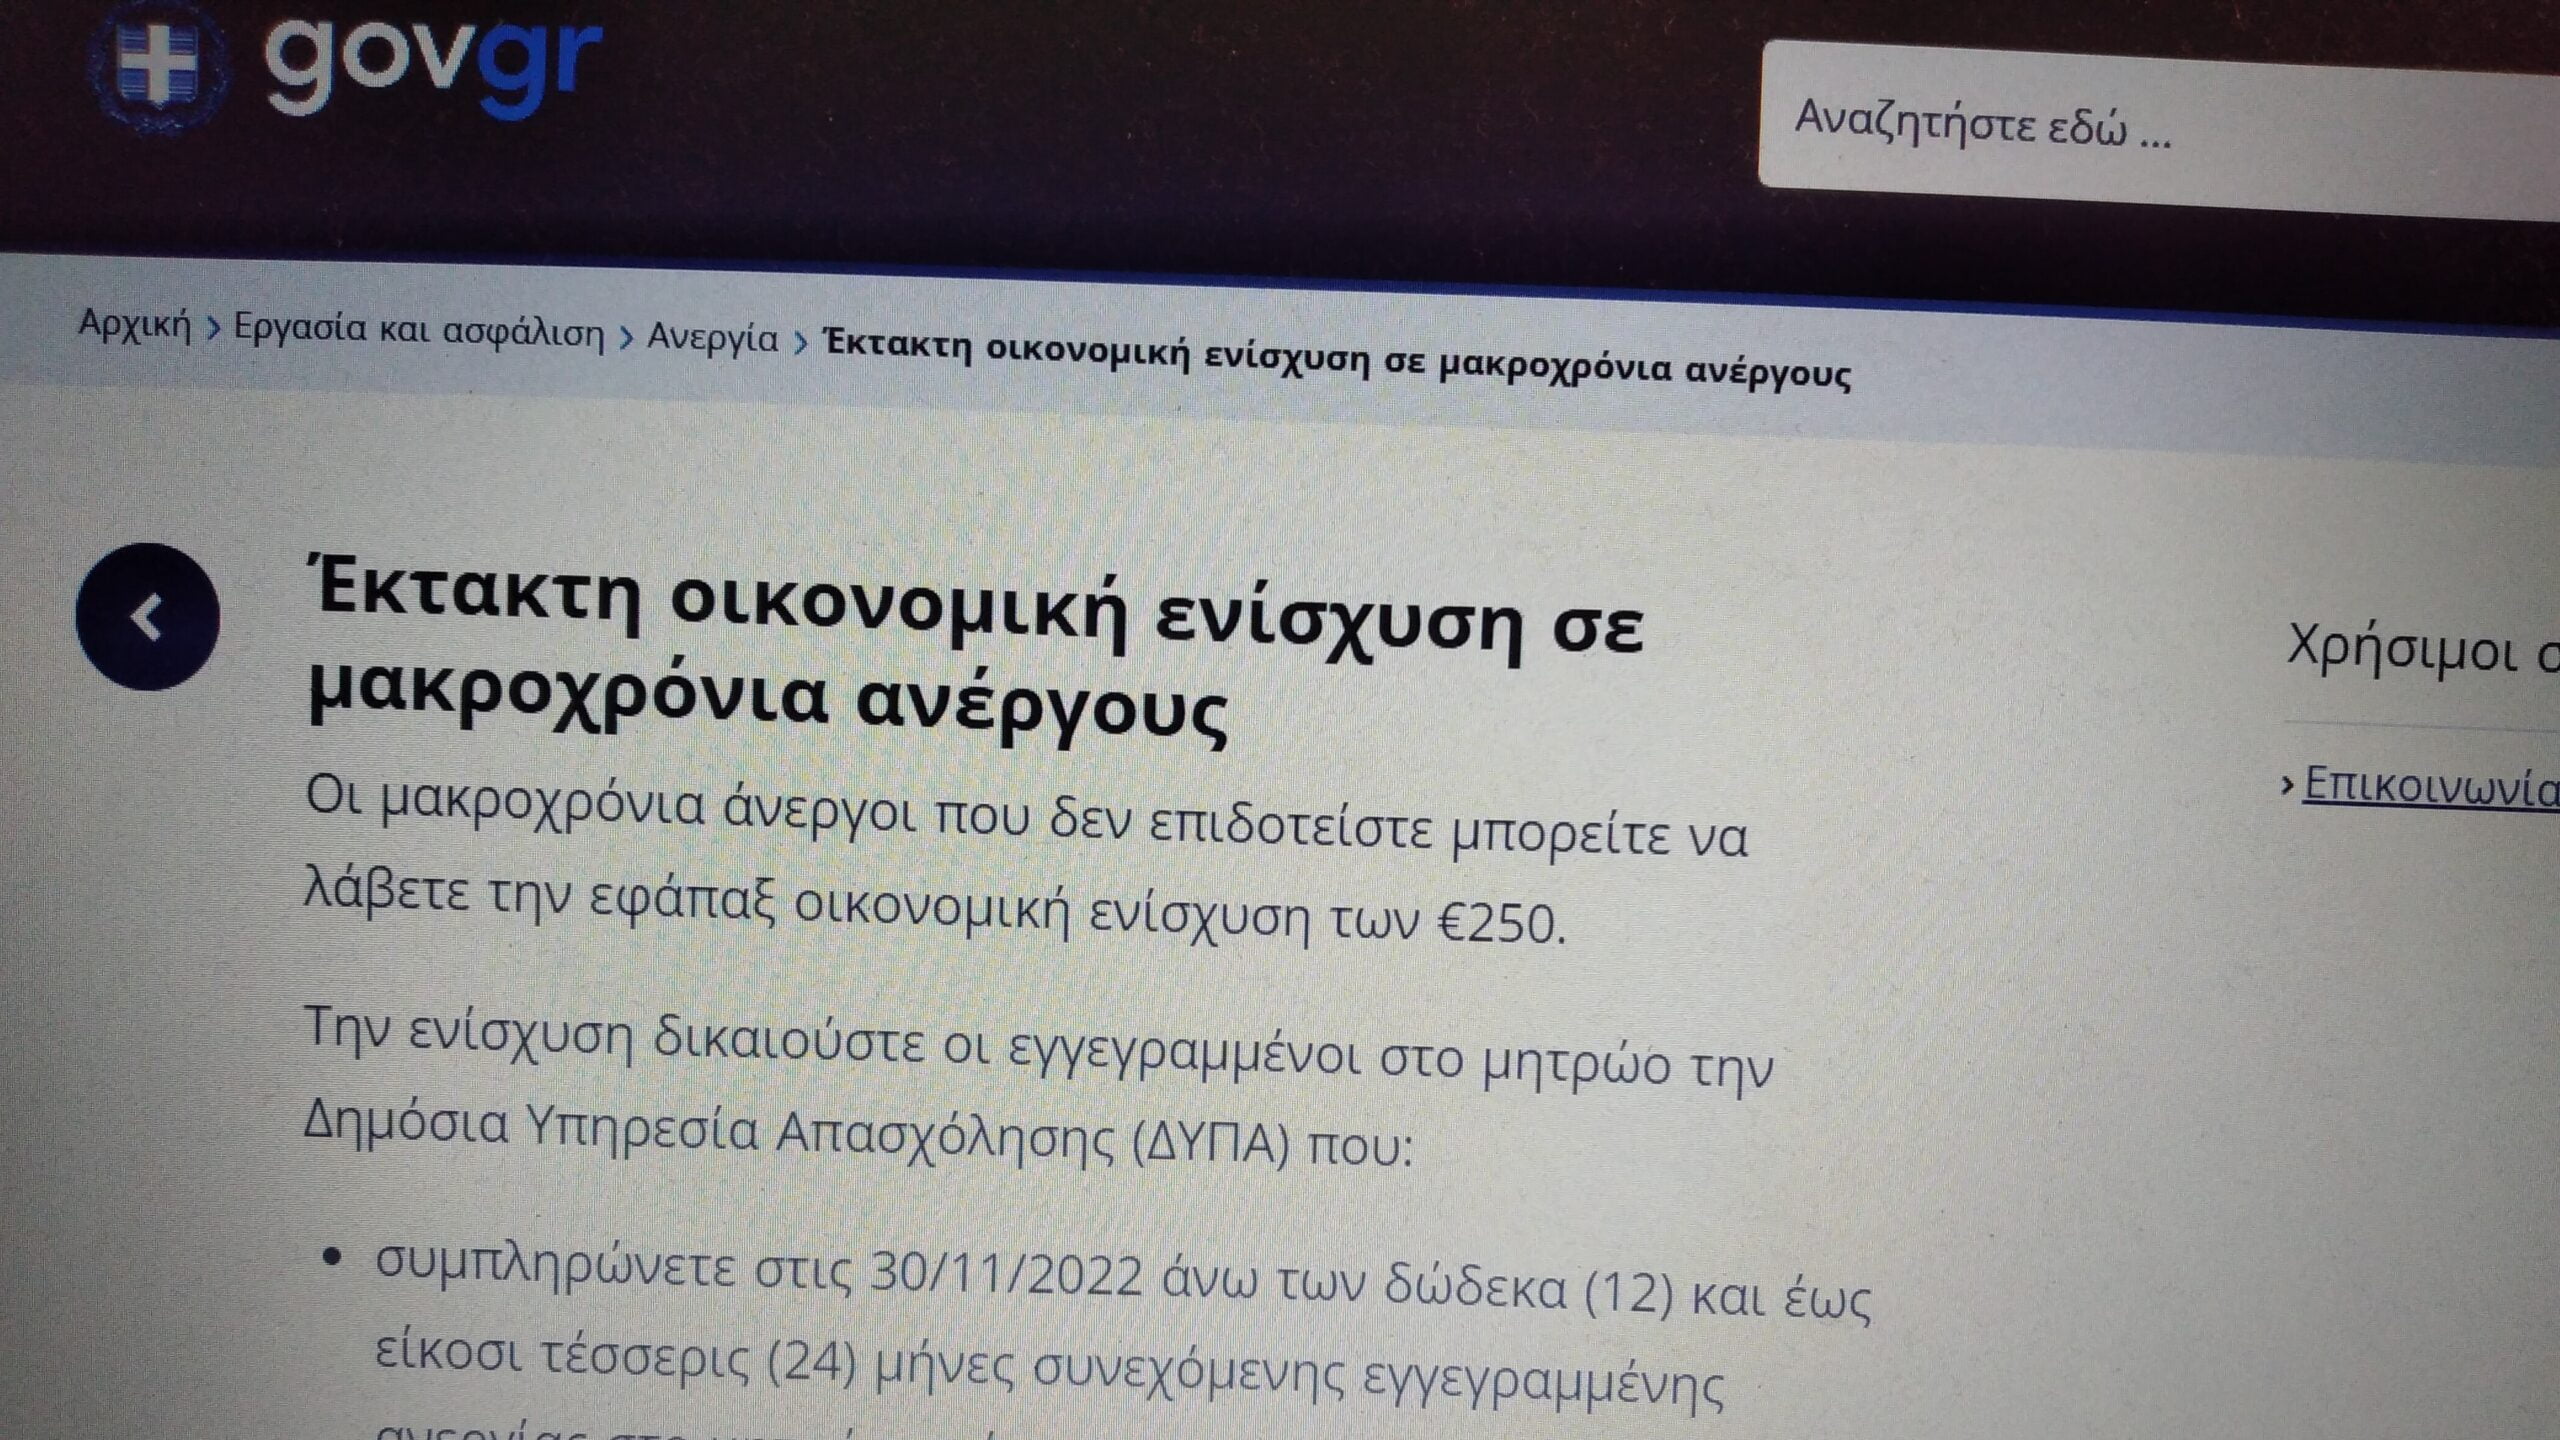 Έτσι θα πάρετε τα 250€ – Επιταγή ακρίβειας (gov.gr)